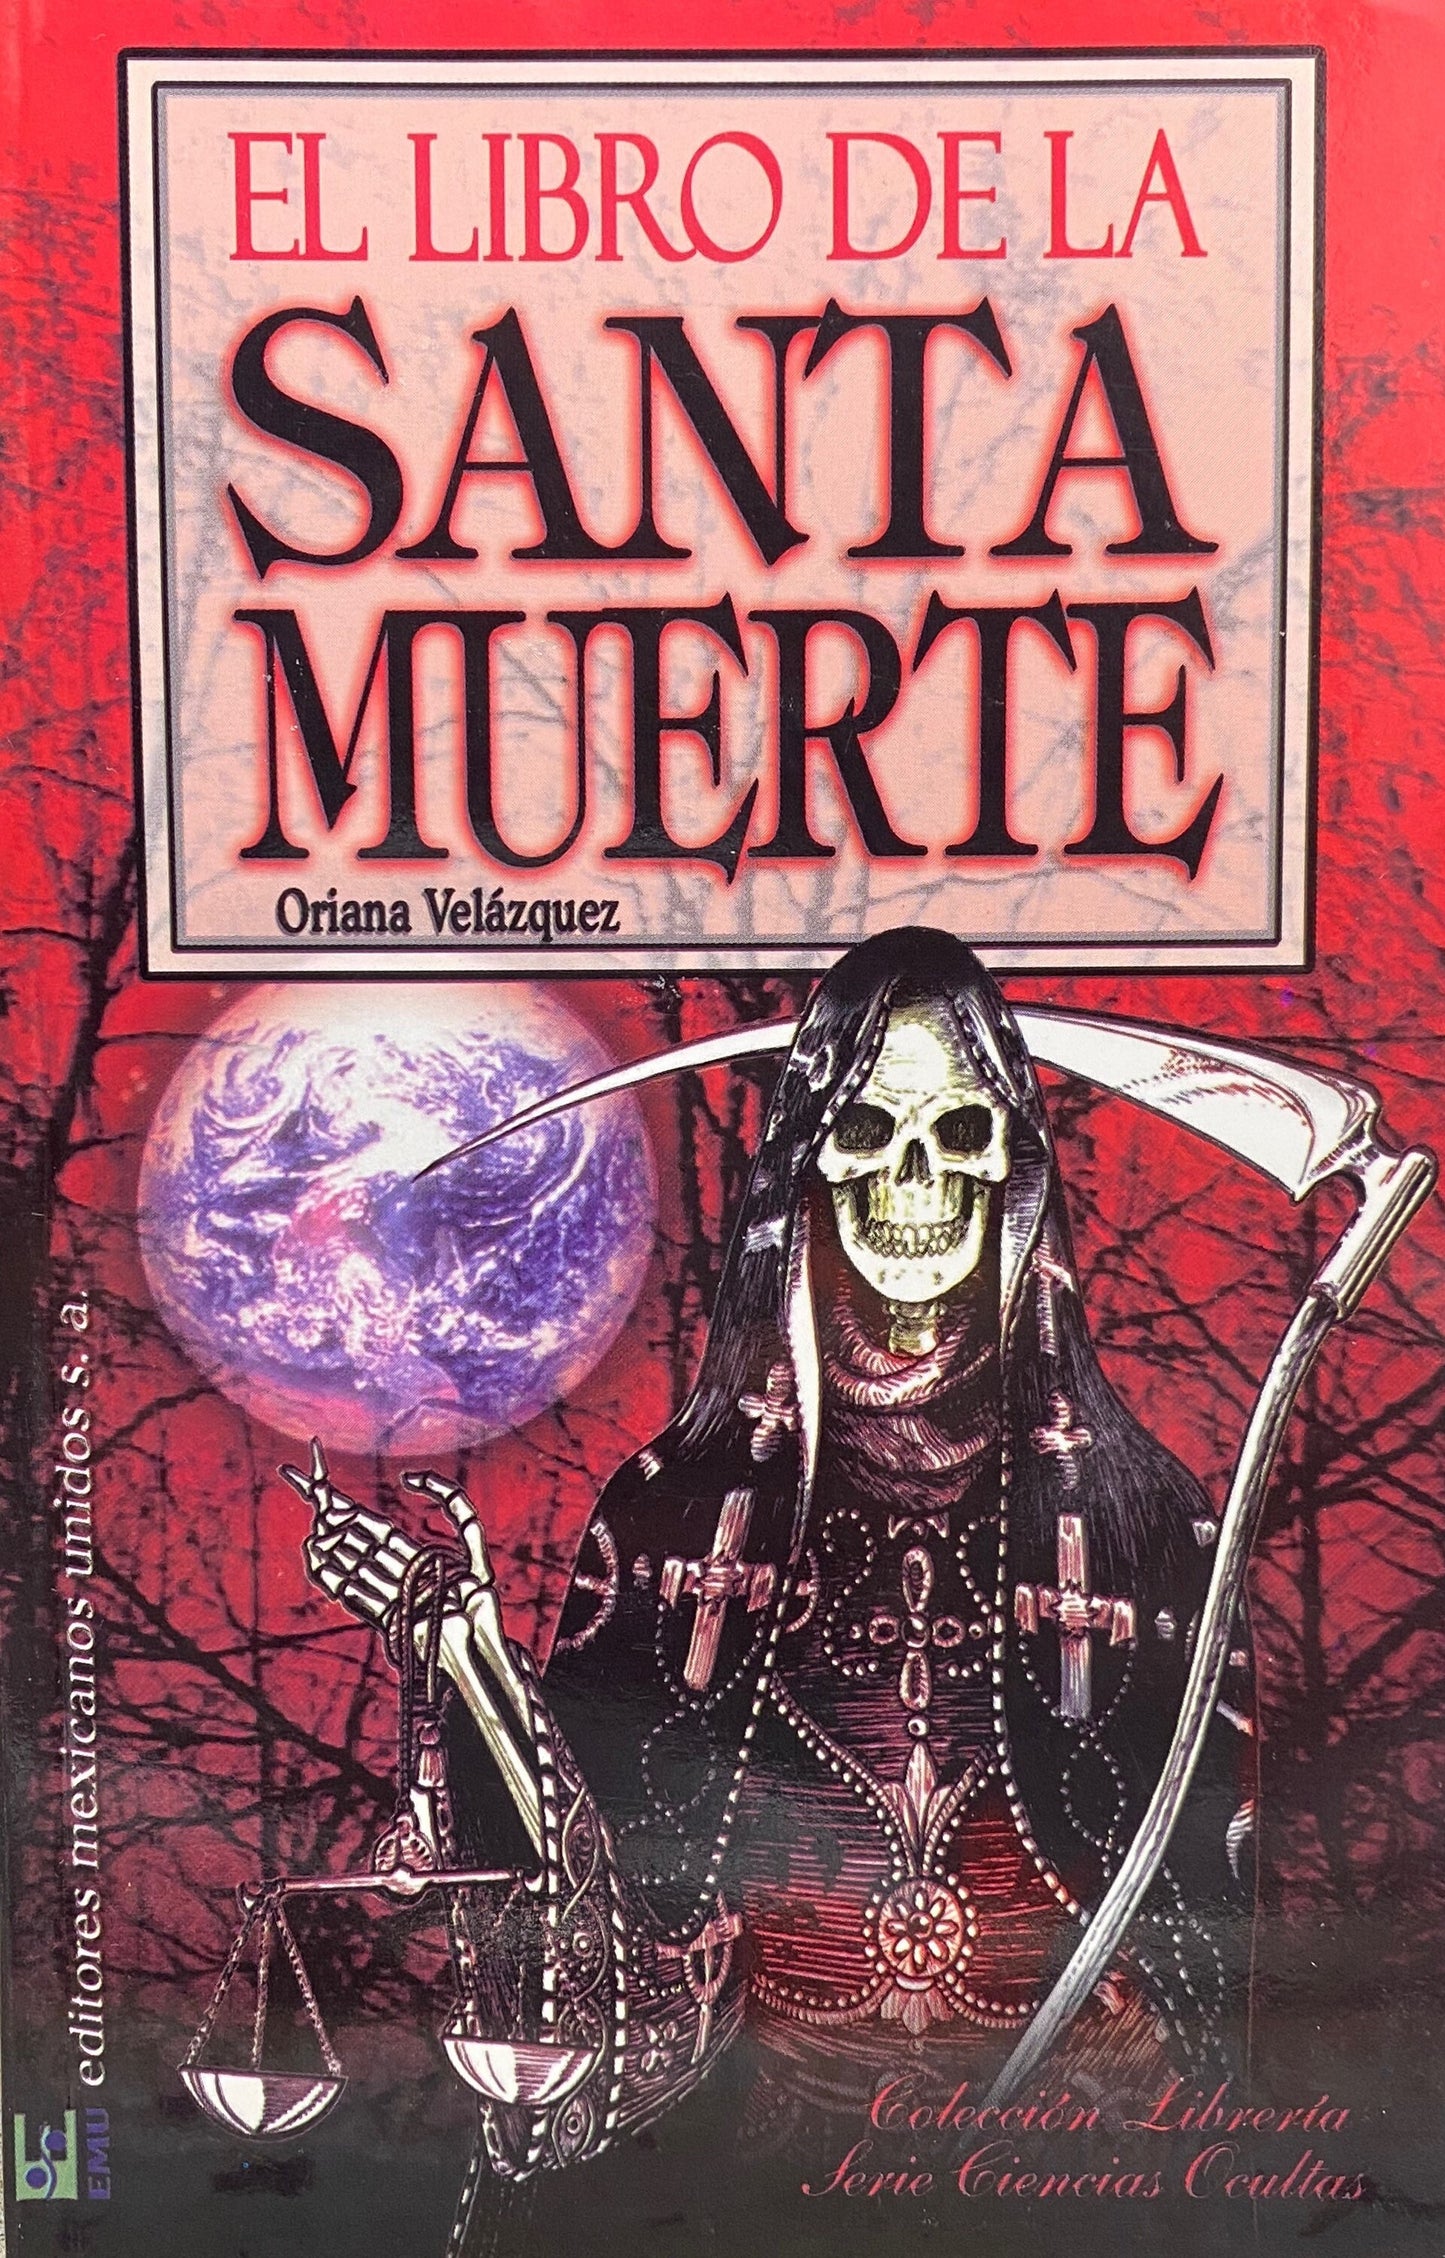 El Libro de La Santa Muerte + From Mexico *NEW BOOK*